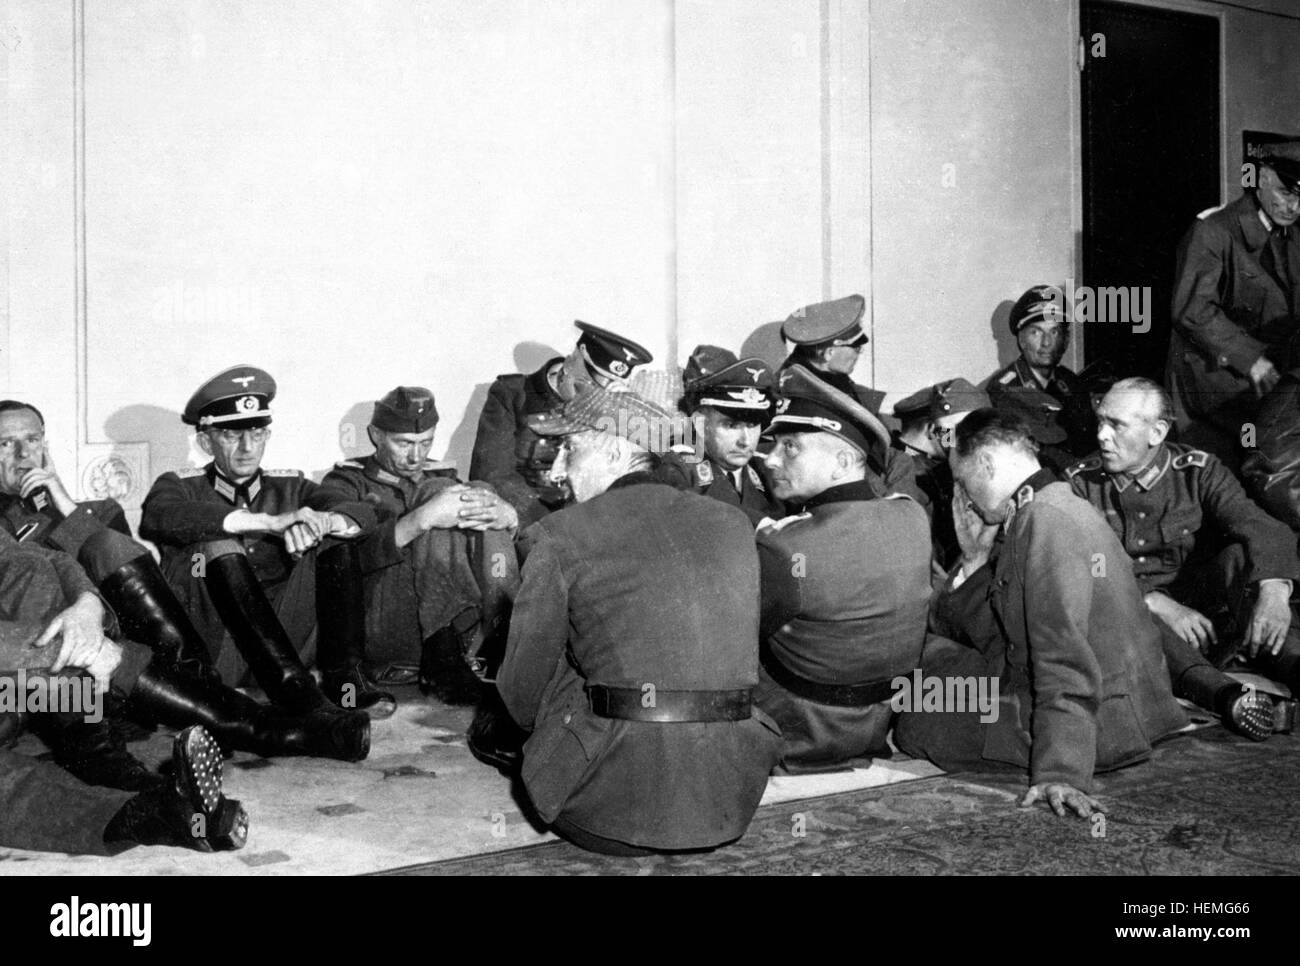 Alti ufficiali tedeschi sequestrati dalla libera le truppe francesi che liberano il loro capitale del paese sono presentate in hotel Majestic, quartier generale per la Wehrmacht nei giorni dell'occupazione nazista. Parigi, Francia, il 26 agosto 1944. Lovell. (Esercito) Nara il file #: 111-SC-193010 guerra & CONFLITTO PRENOTA #: 1293 funzionario tedesco POWs a Parigi HD-SN-99-02952 Foto Stock